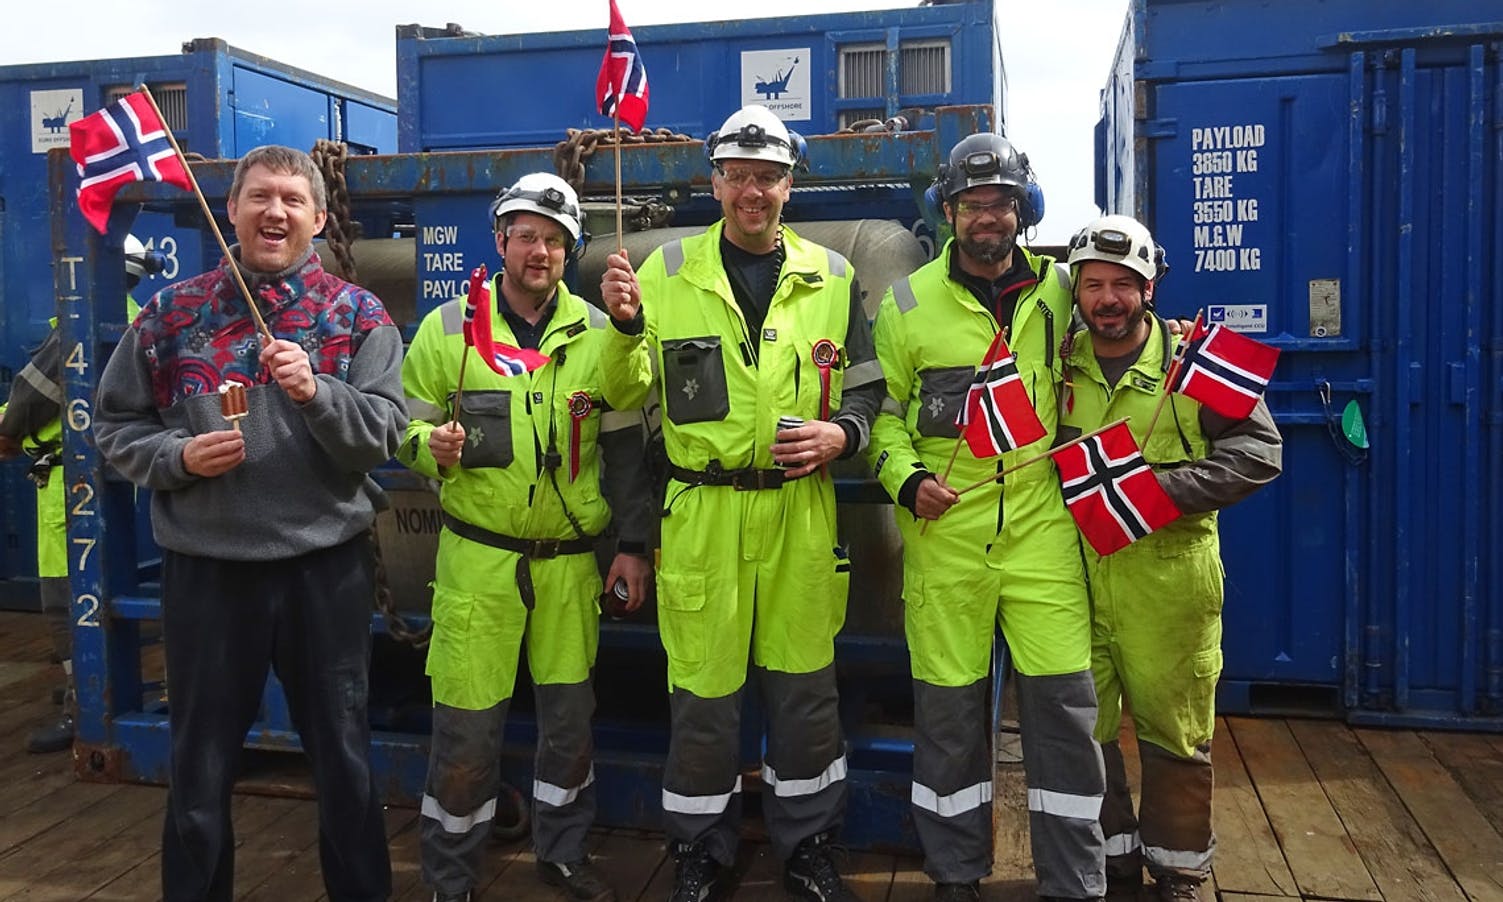 Oceaneering Inspection team på Veslefrigg. Ingvar Bjørkhaug i midten.